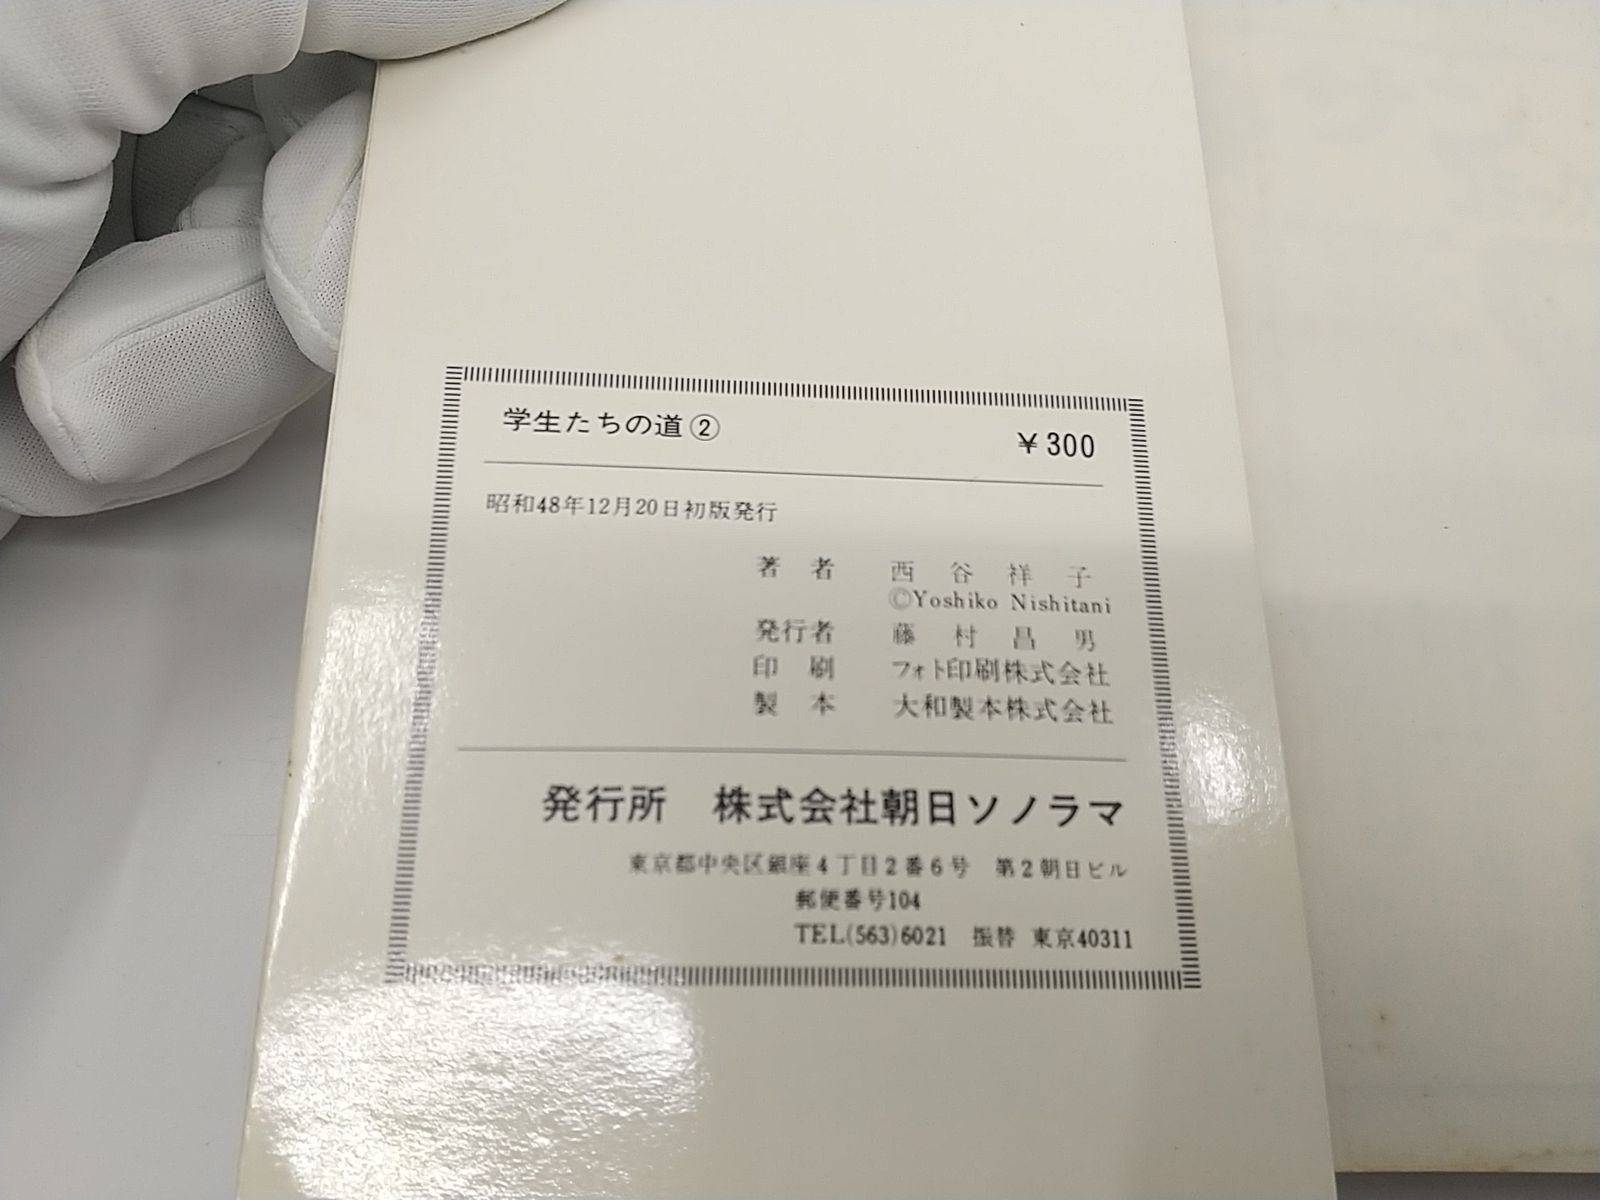 【初版】学生たちの道 全2巻セット 西谷祥子 サンコミックス